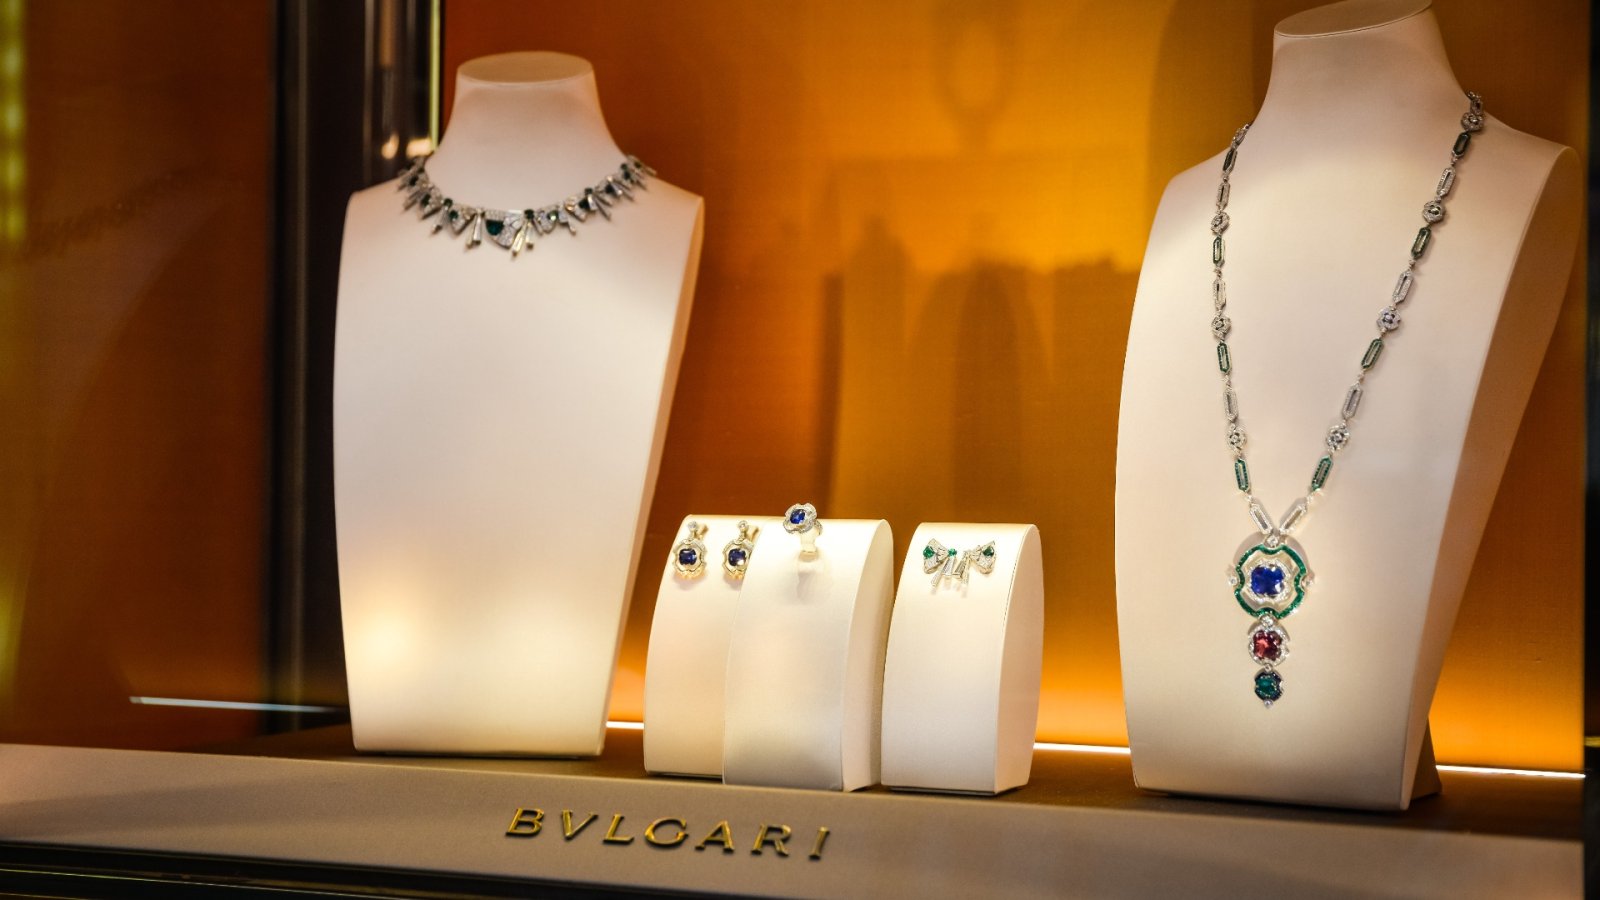 Bulgari höga juveler på utställning i NYC: upptäck symbolen för återfödelse